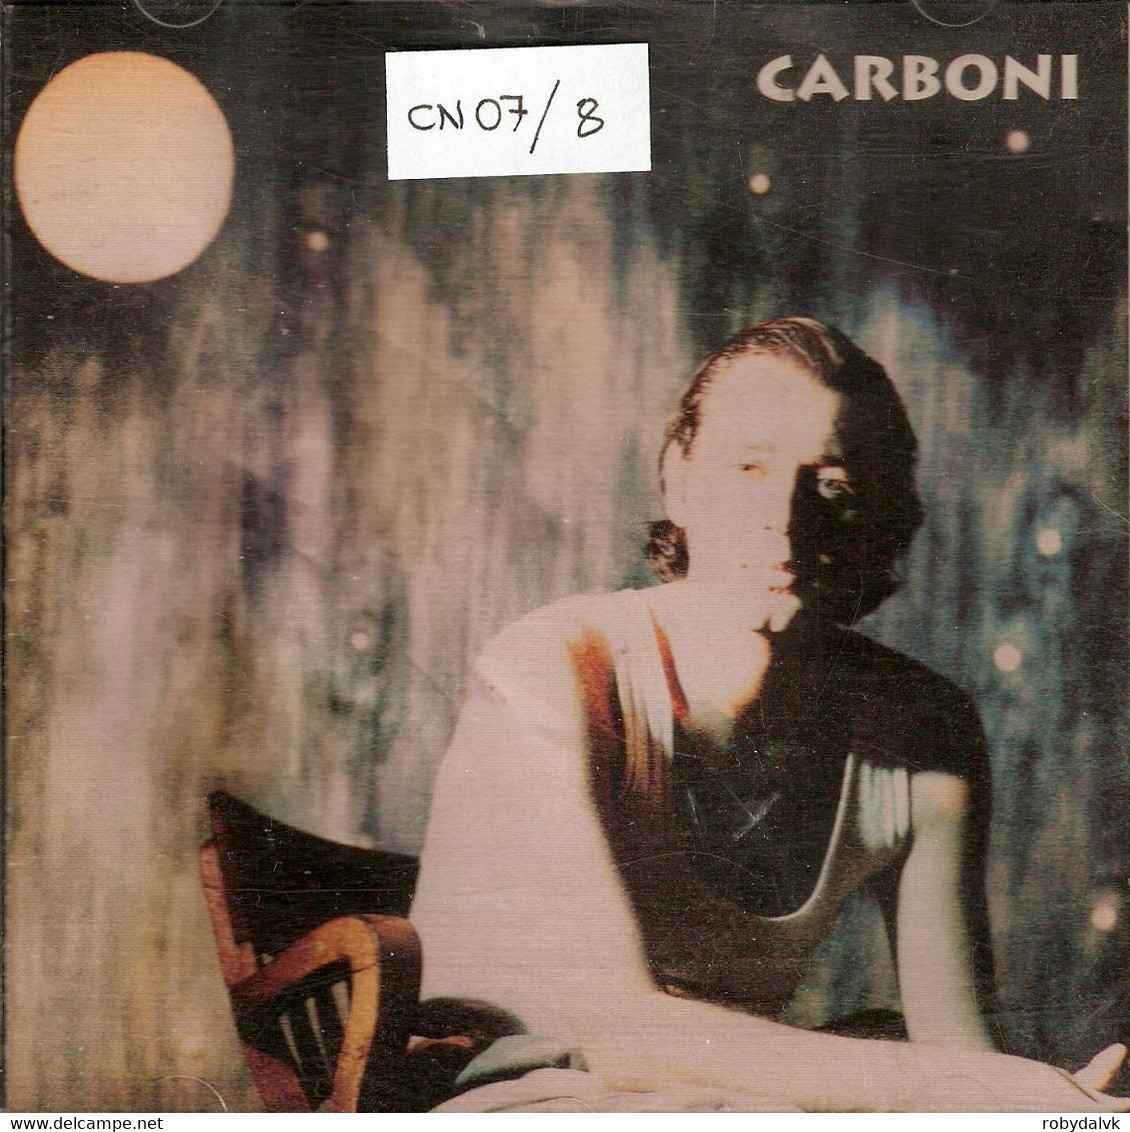 CN07 - LUCA CARBONI : CARBONI - Altri - Musica Italiana